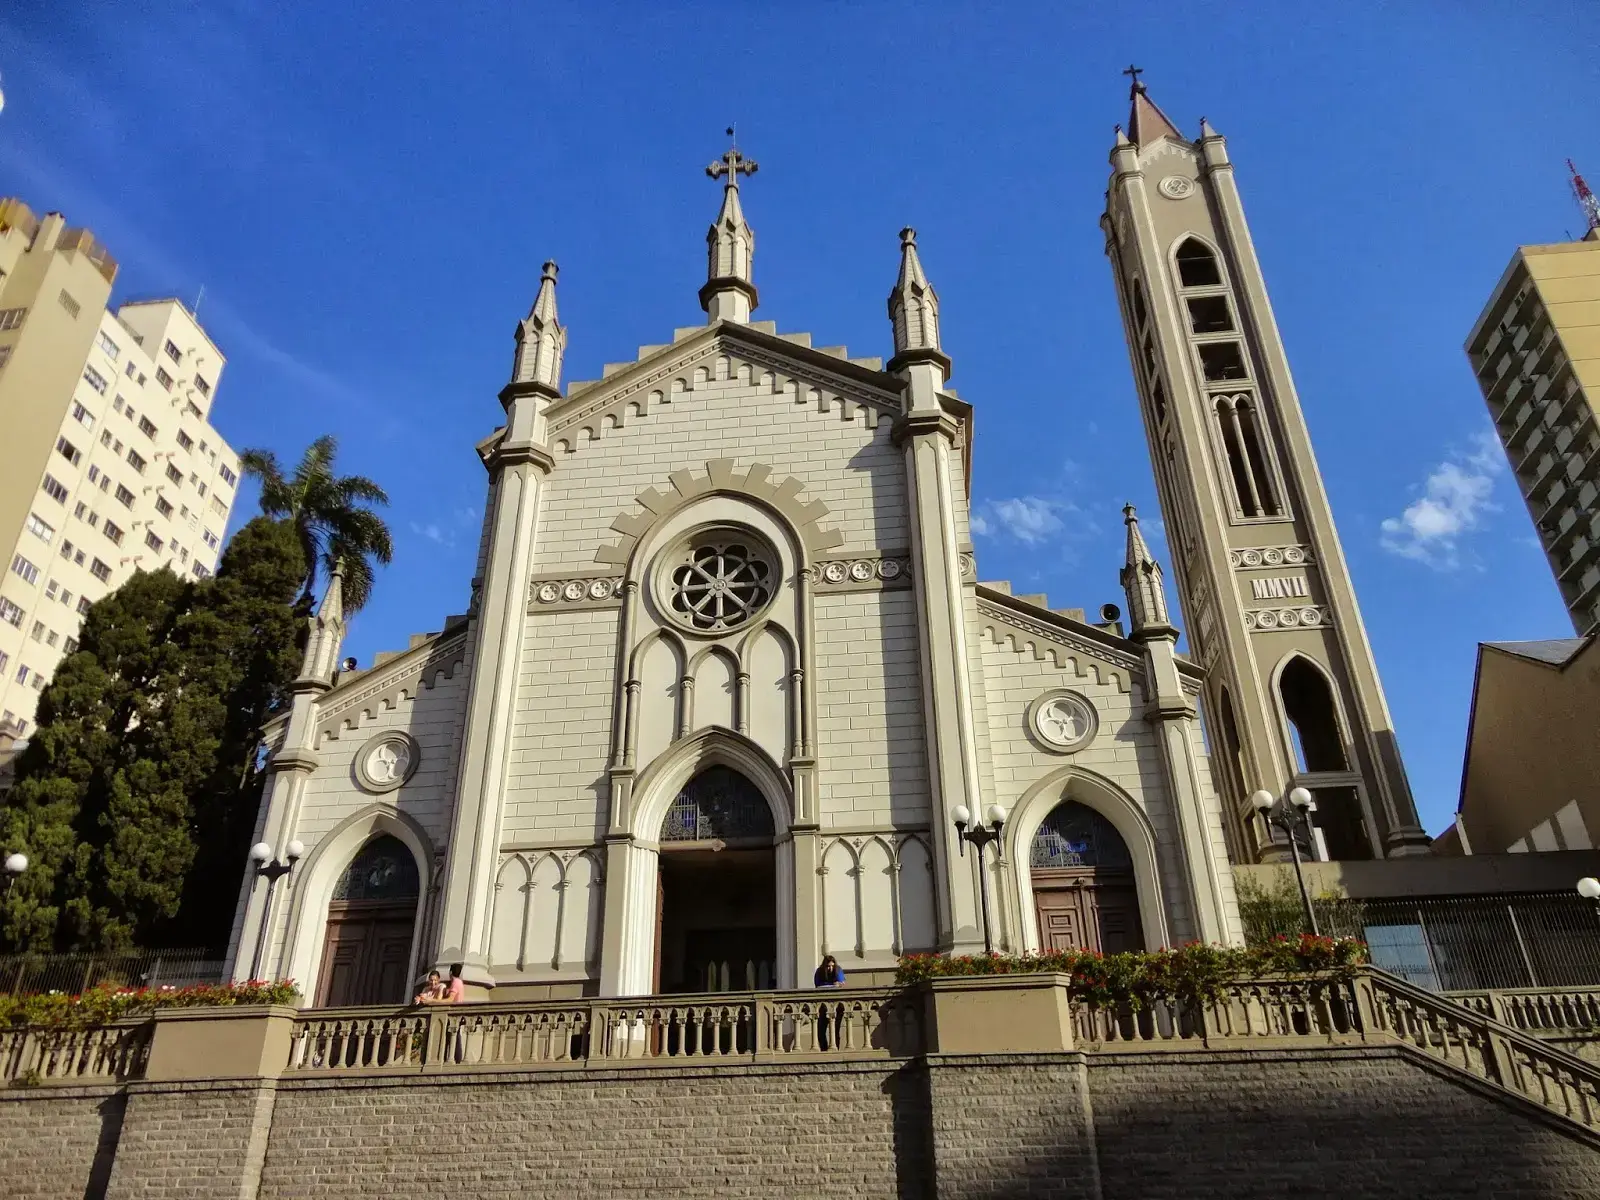 Arquitetura romântica: Catedral de Caxias do Sul (Rio Grande do Sul)